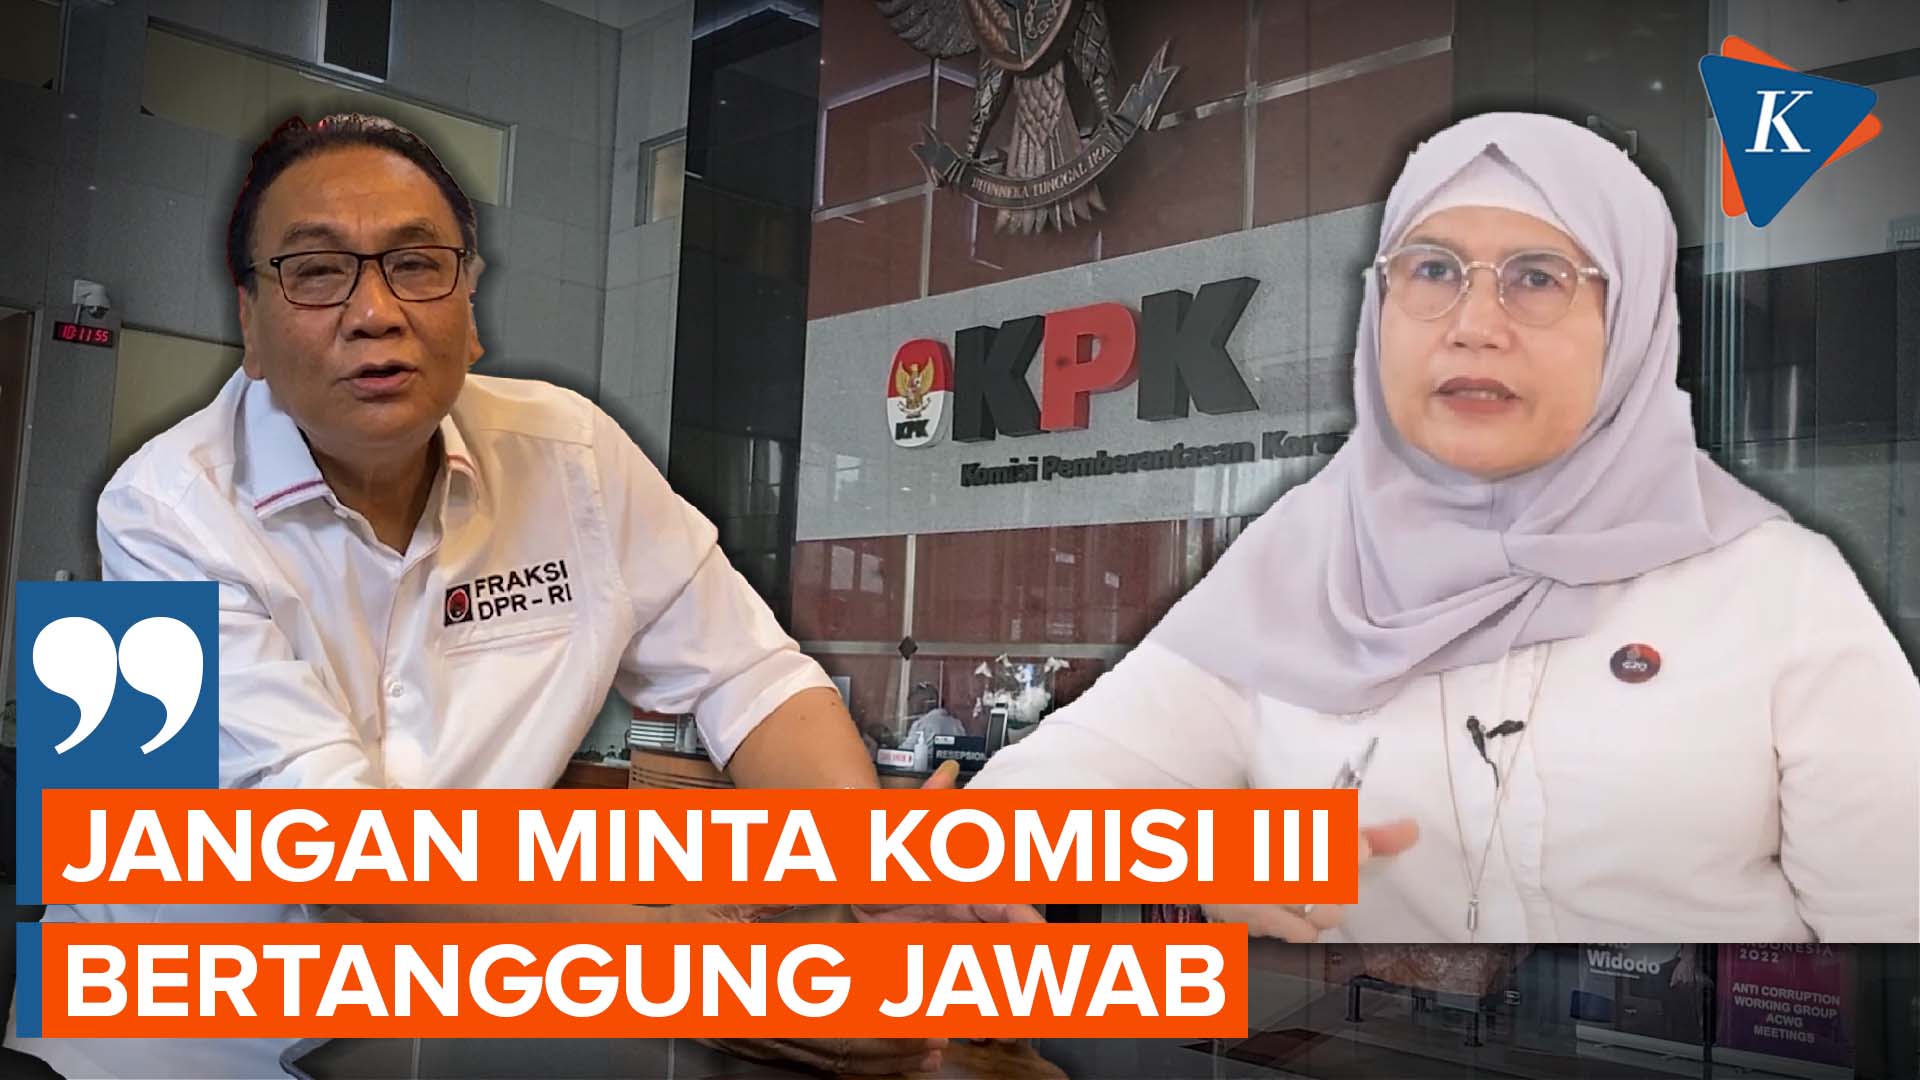 Komisi III DPR Enggan Tanggung Jawab soal Kasus Lili Pintauli di KPK